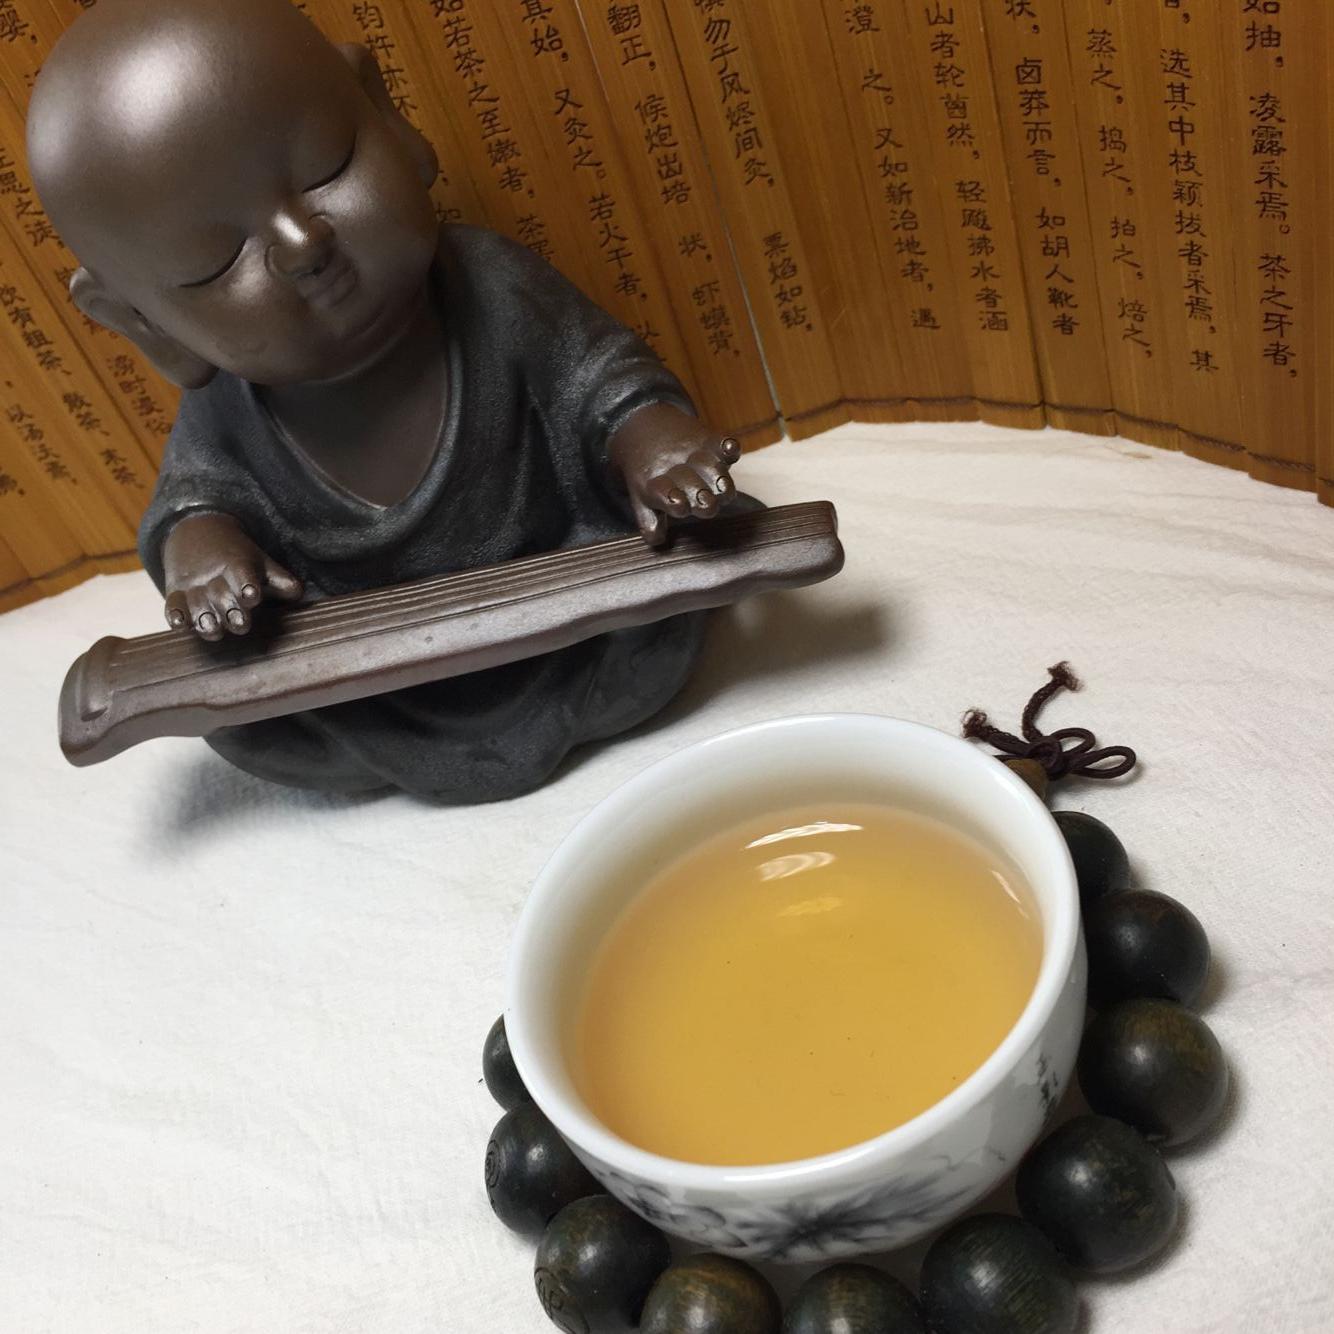 九品墨安化黑茶喝茶的七种感悟,您是否也有您的茶悟呢